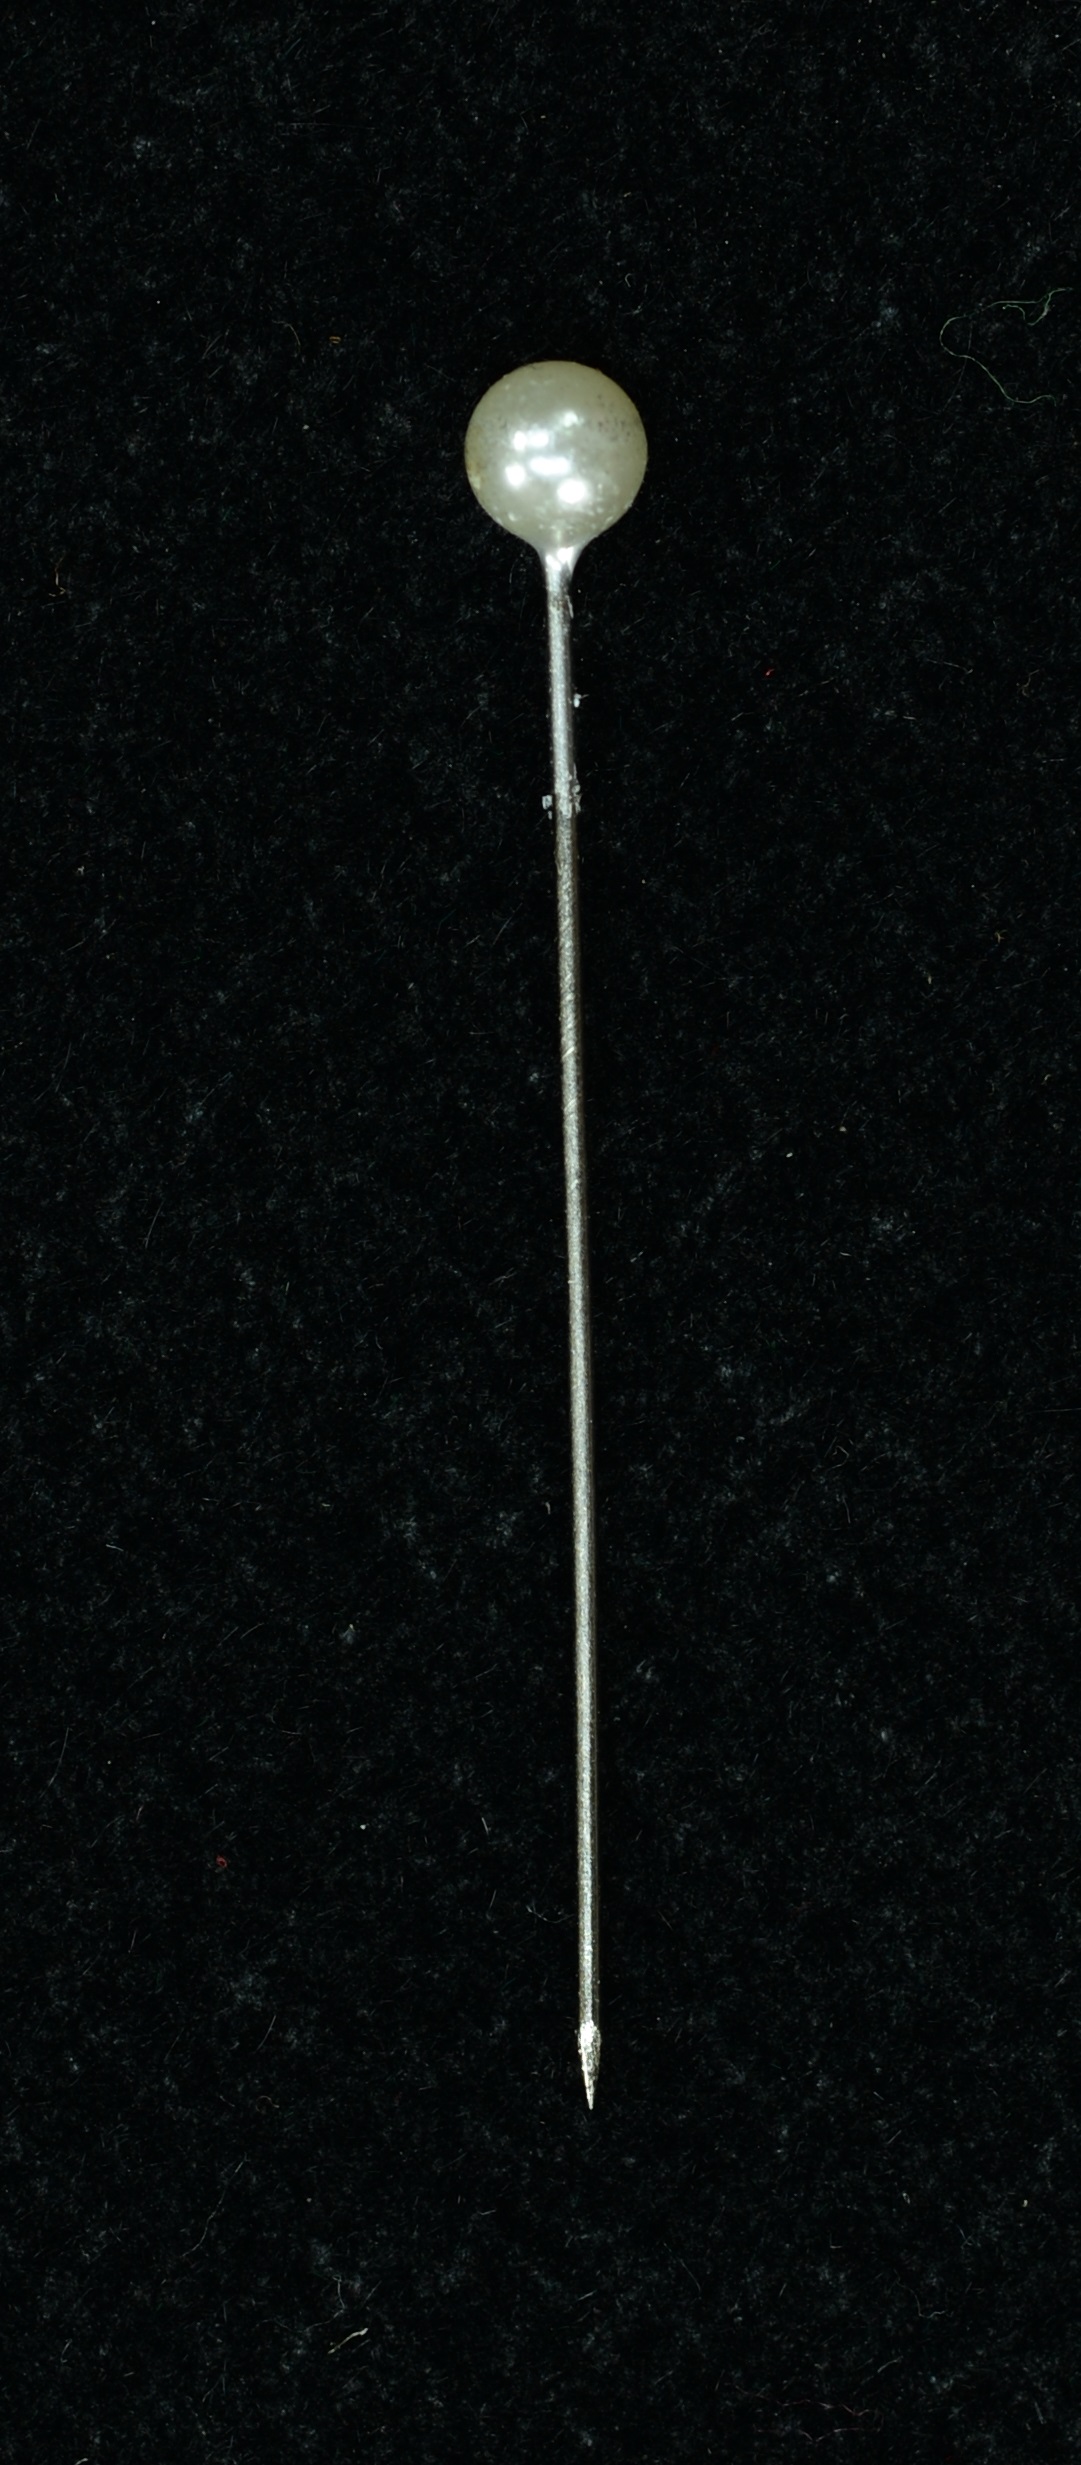 1.5 inch Black Pearl Head Corsage Pins 144 Pieces 